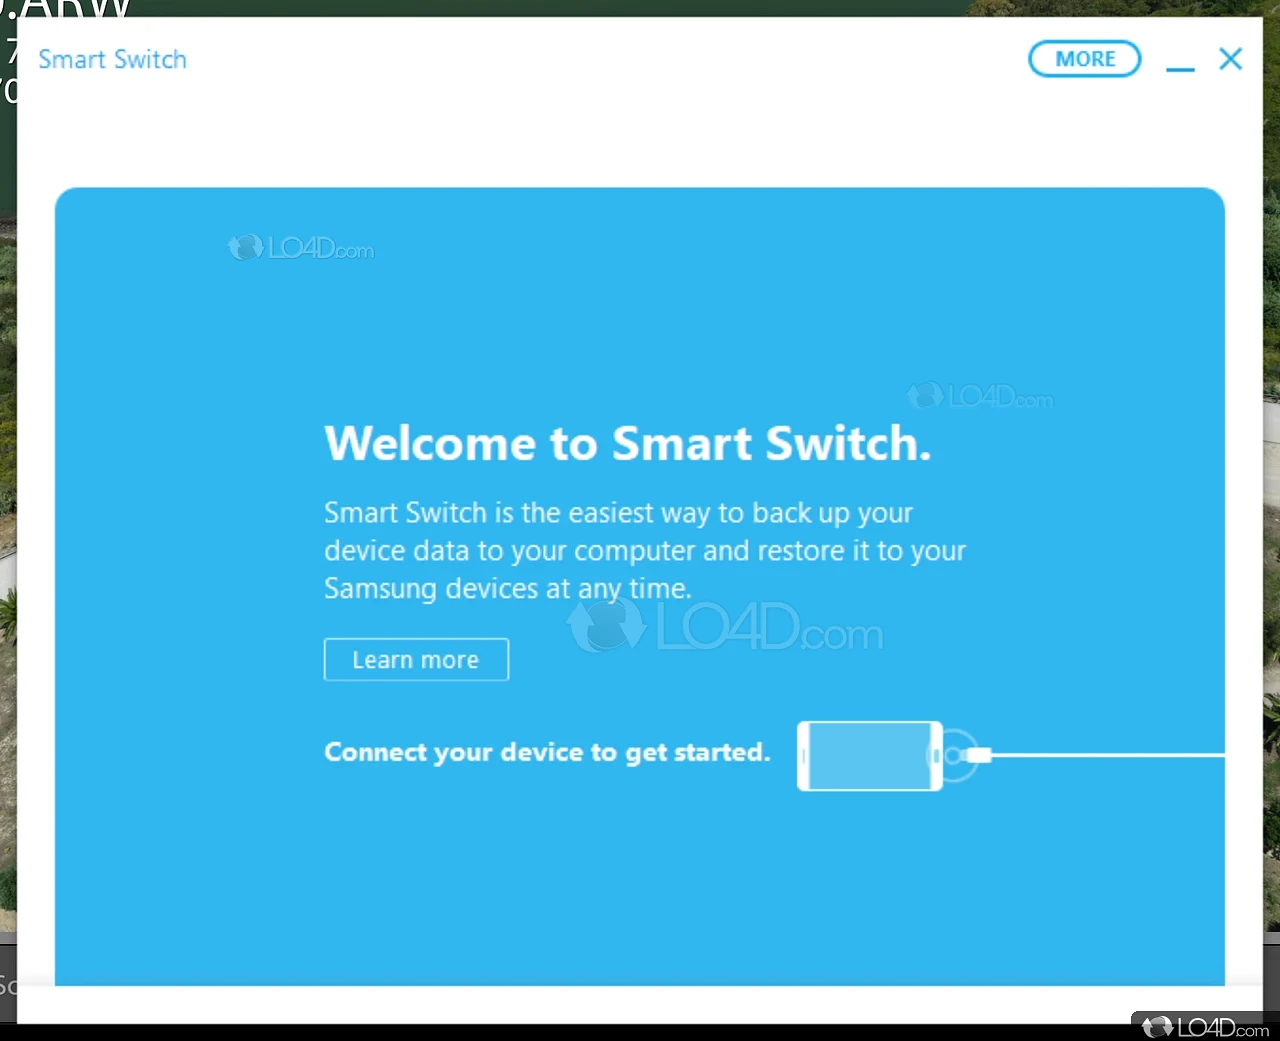 samsung smart switch windows 10 64 bit download